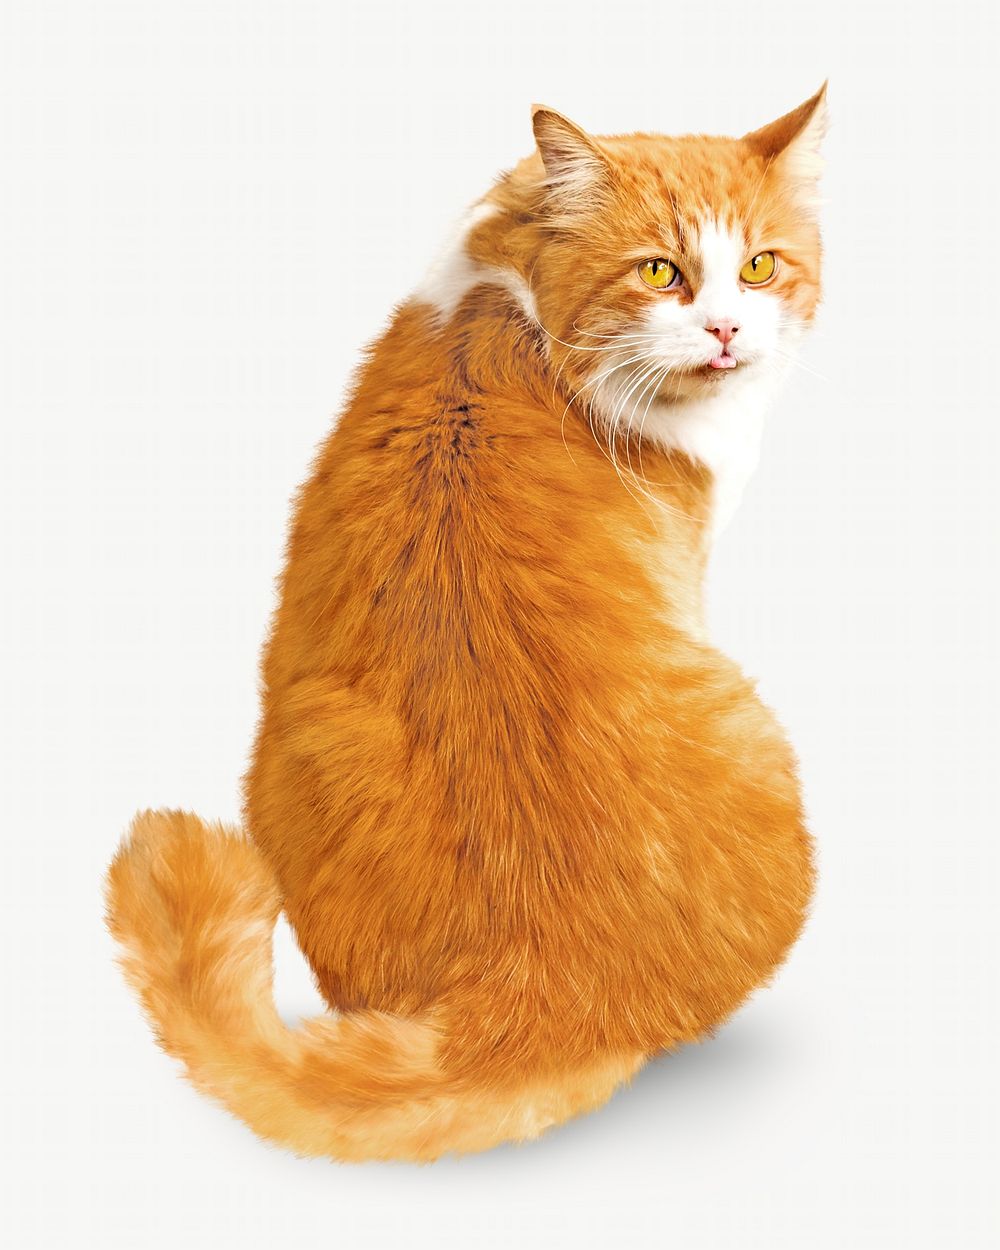 Orange cat, isolated design